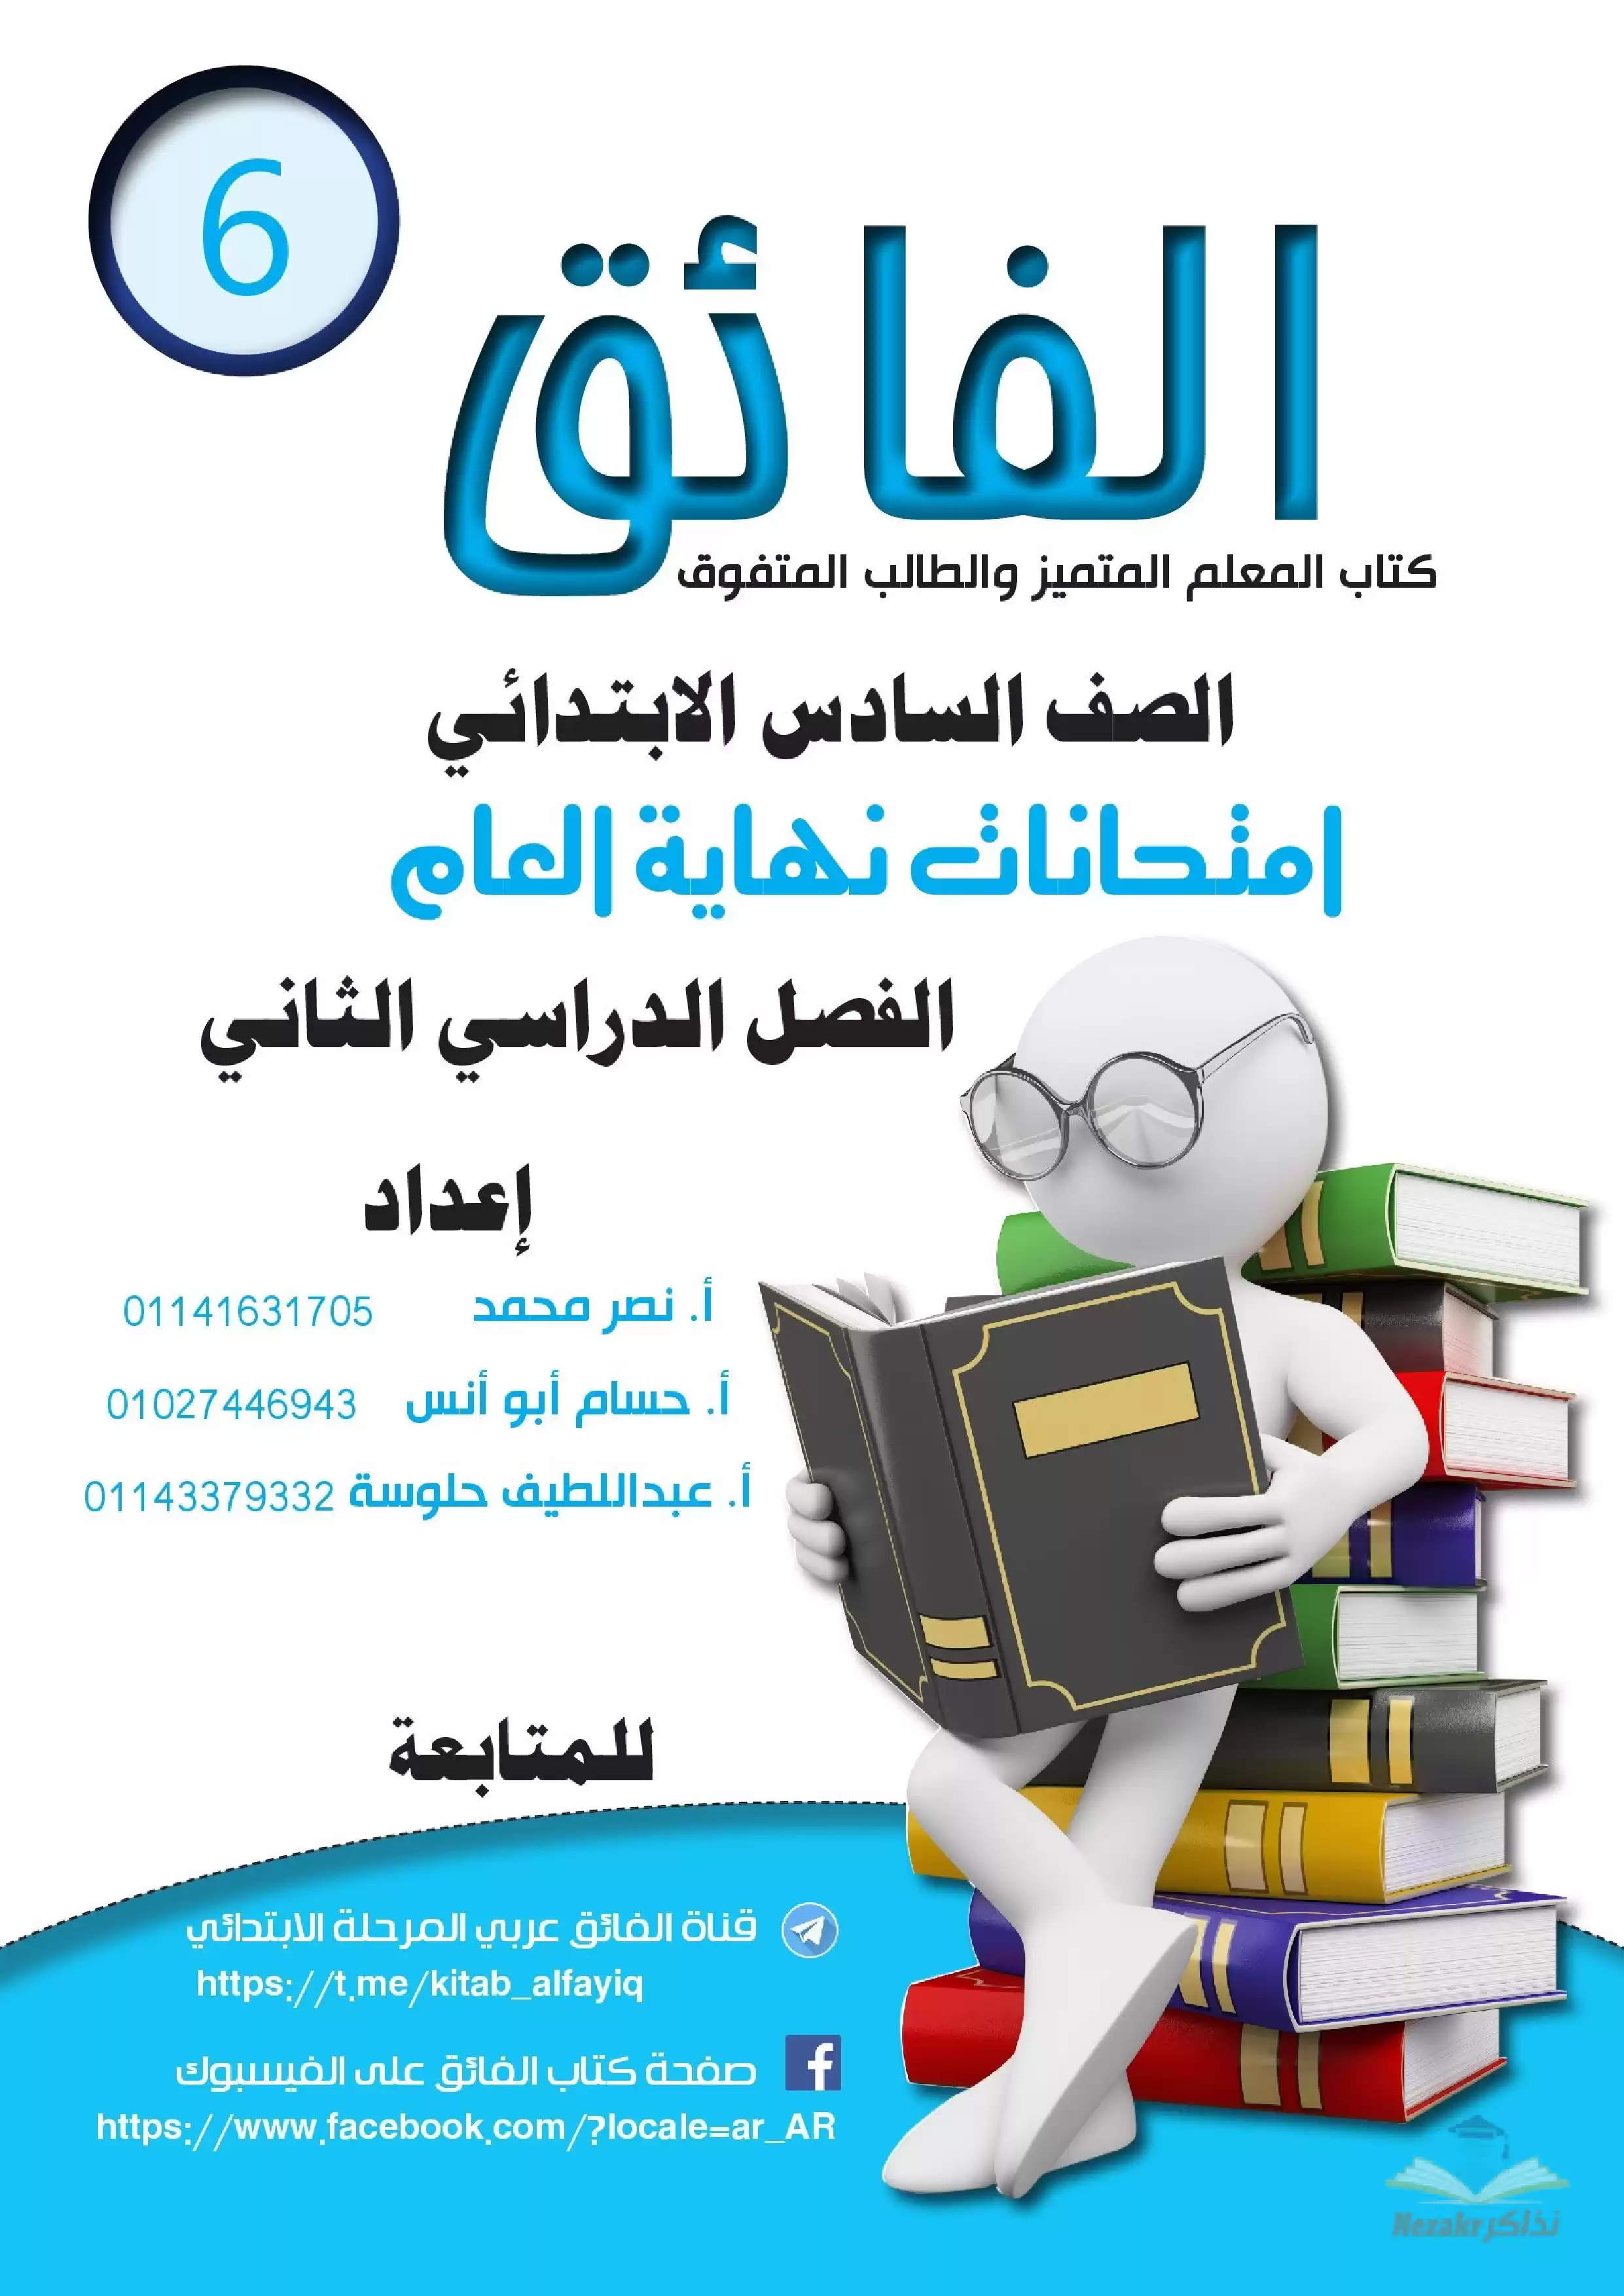 اختبارات الفائق لغة عربية للصف السادس الابتدائي الترم الثاني 2024 PDF بالاجابات